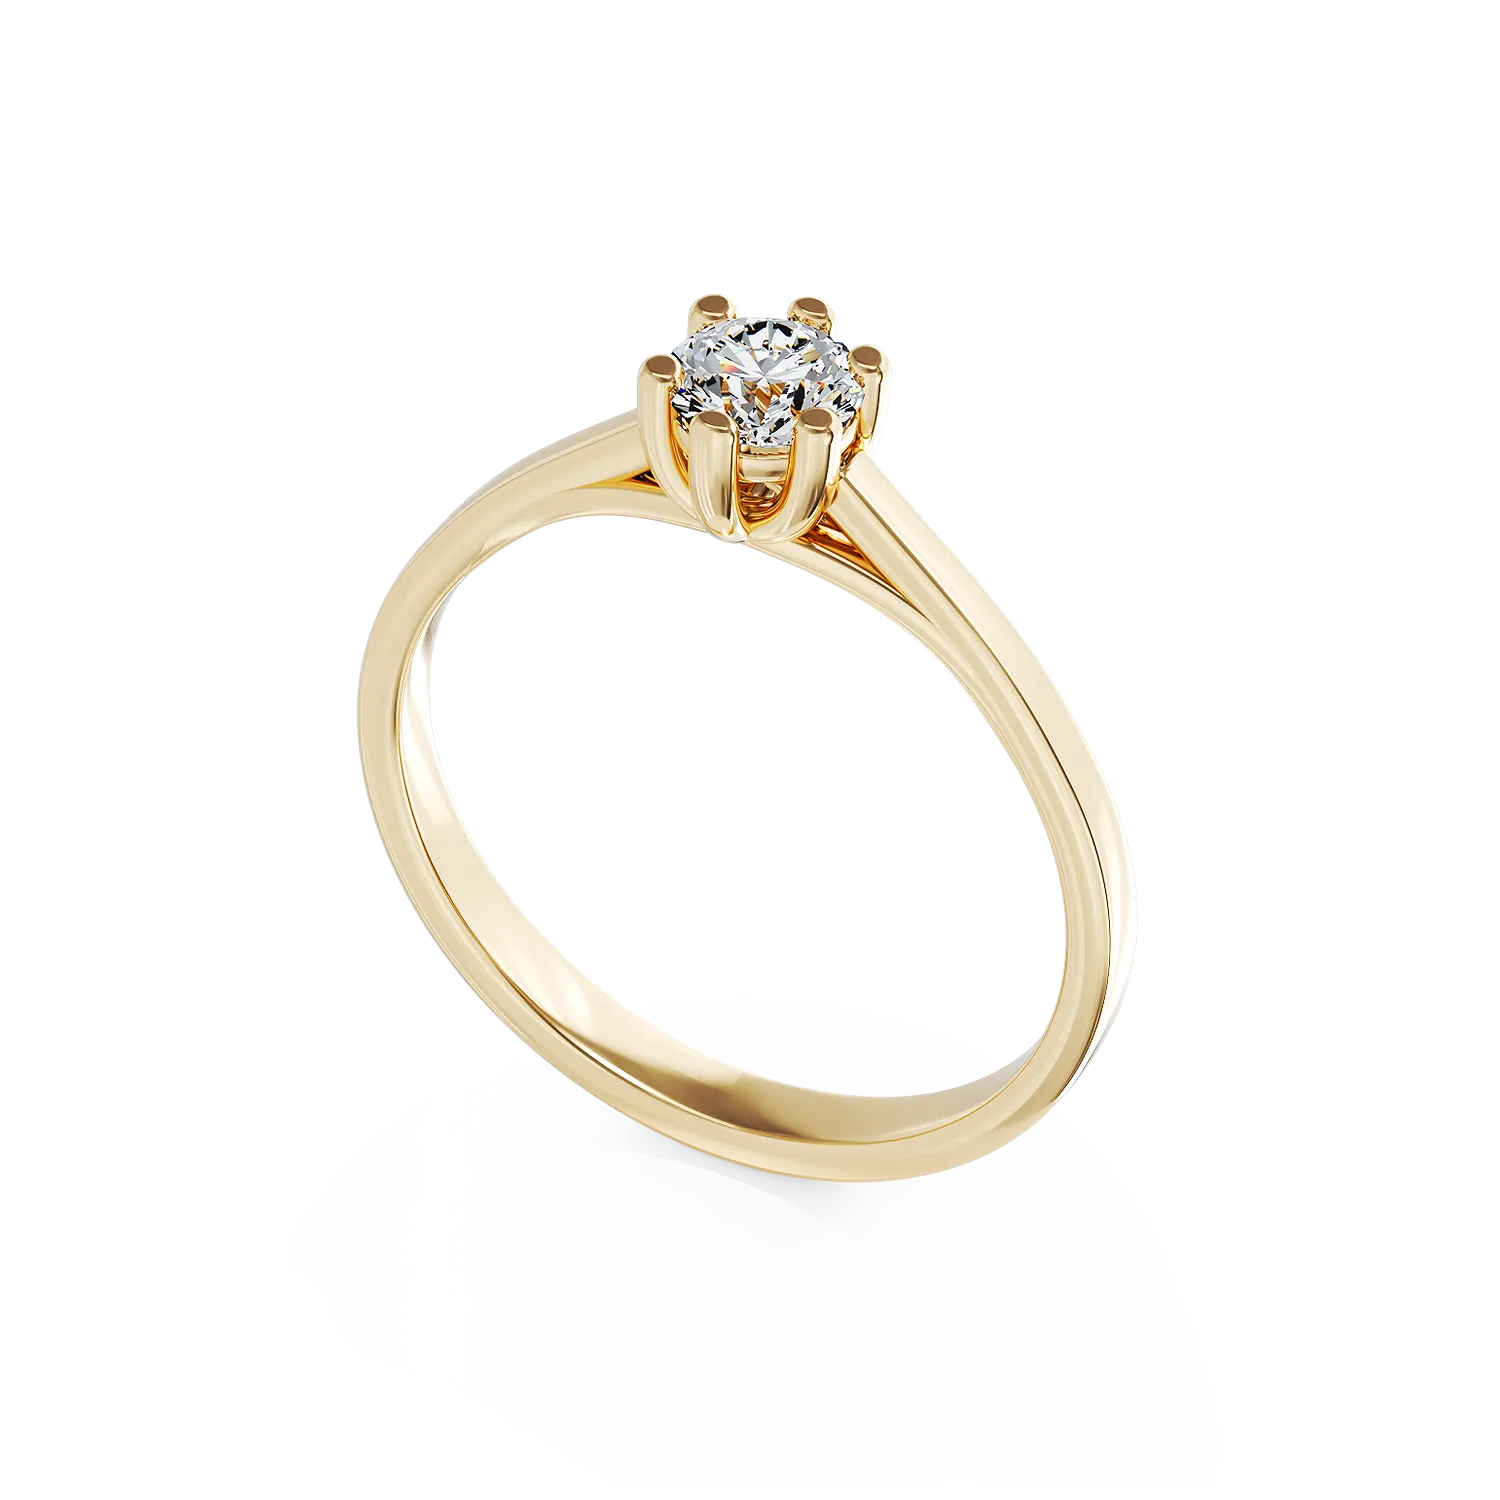 Eljegyzési gyűrű 18K-os sárga aranyból 0,15ct gyémánttal. Gramm: 3,5